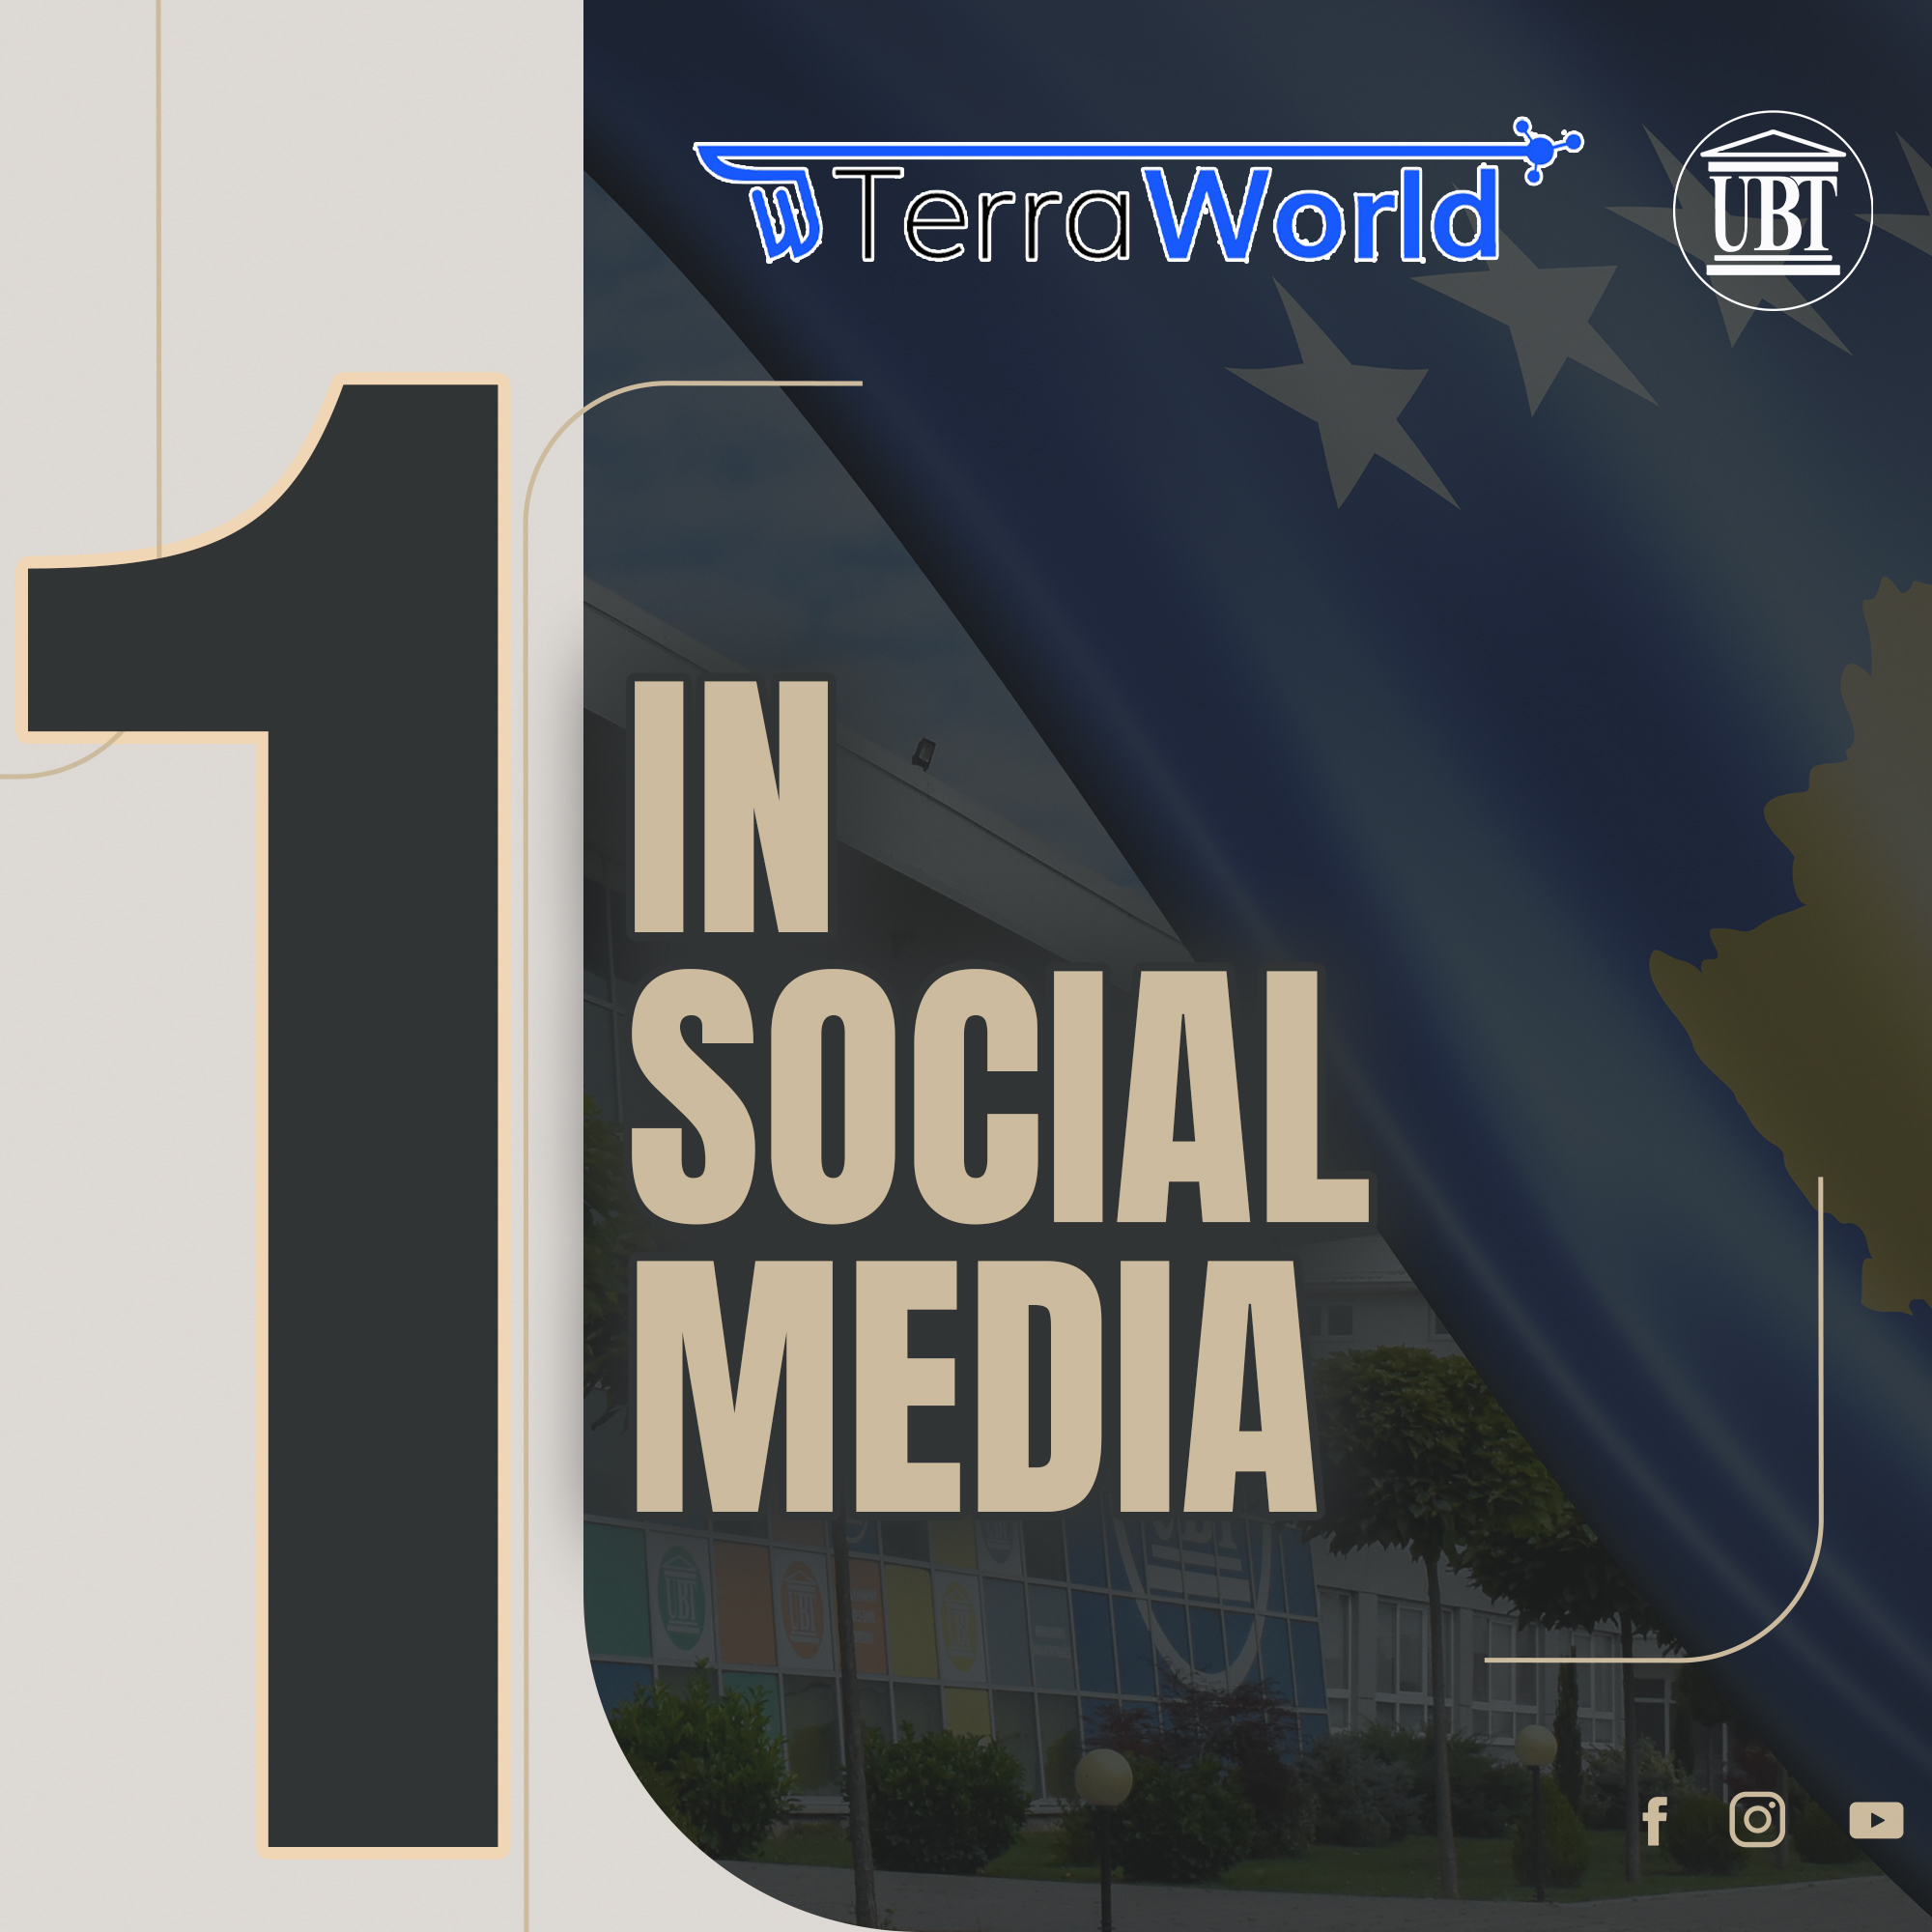 UBT prin për aktivitetin në mediat sociale nga universitetet në Kosovë